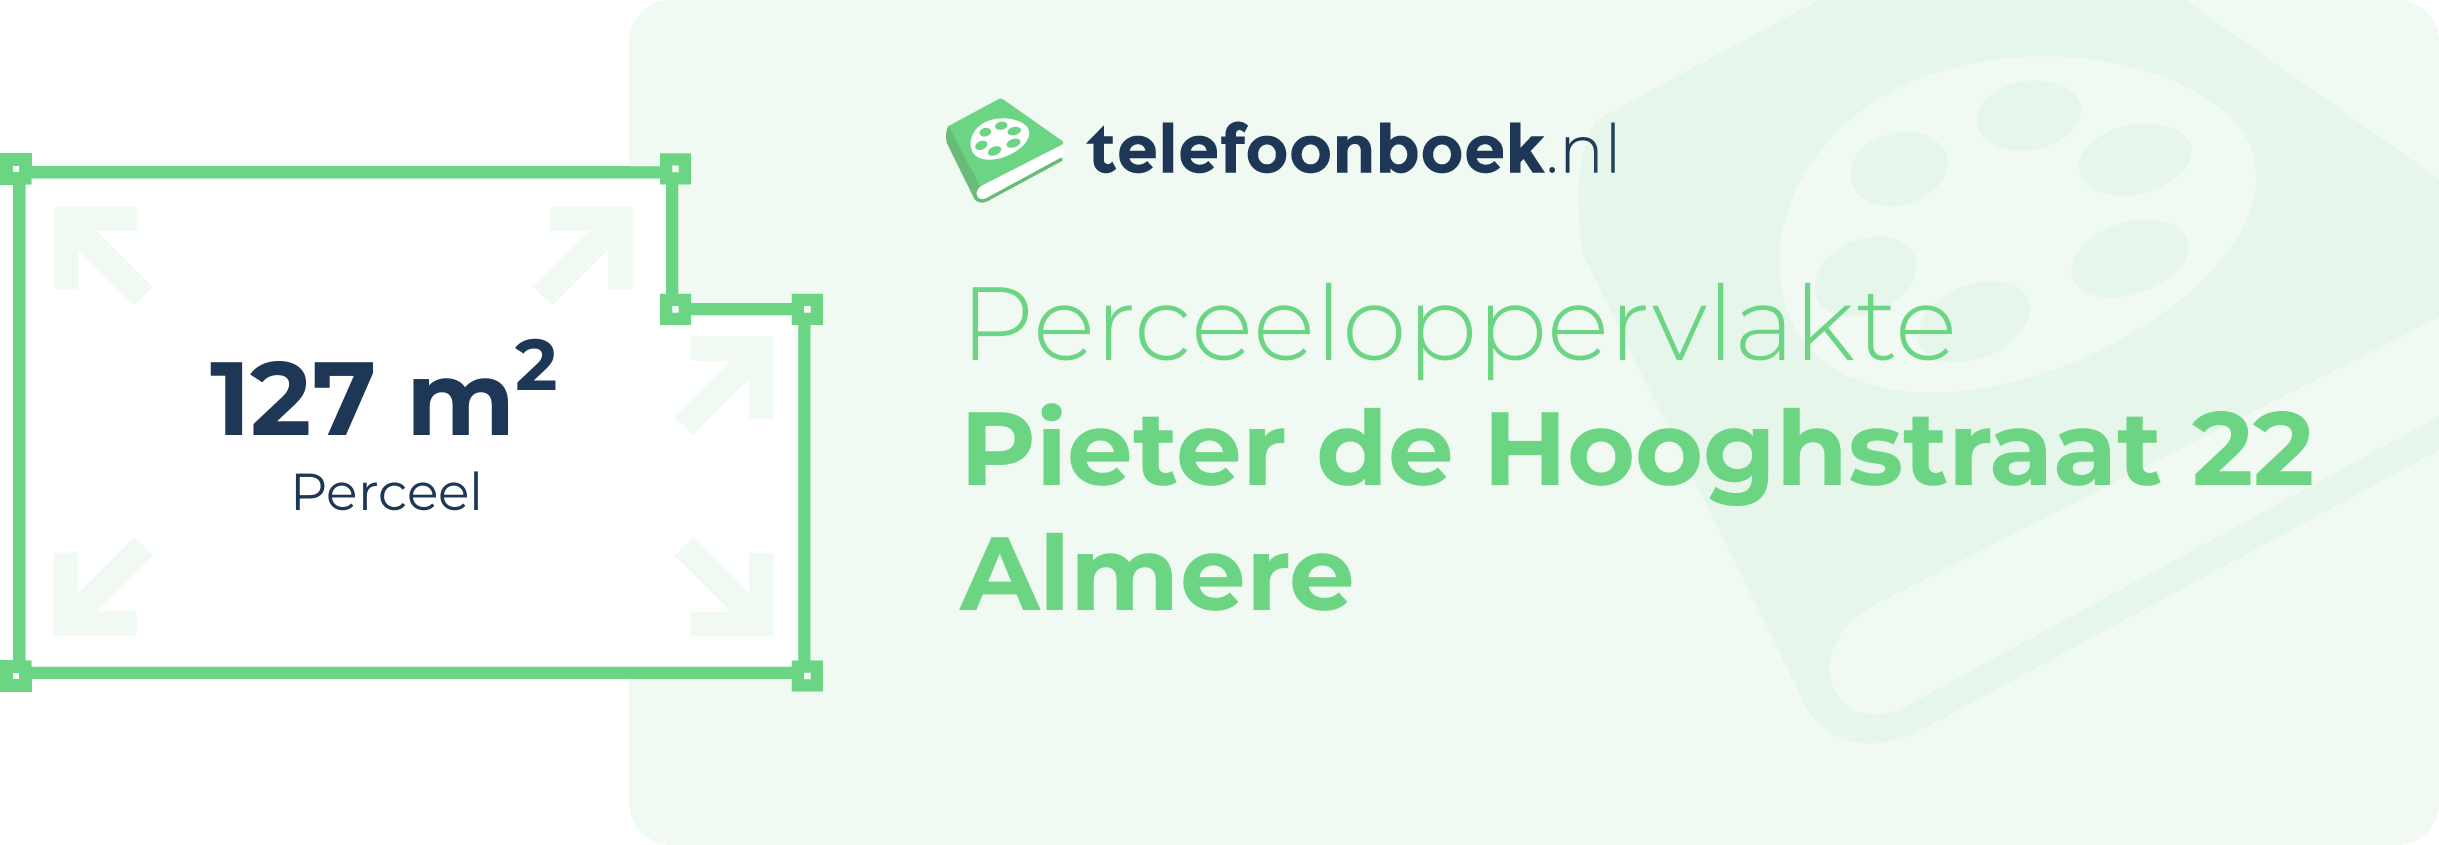 Perceeloppervlakte Pieter De Hooghstraat 22 Almere